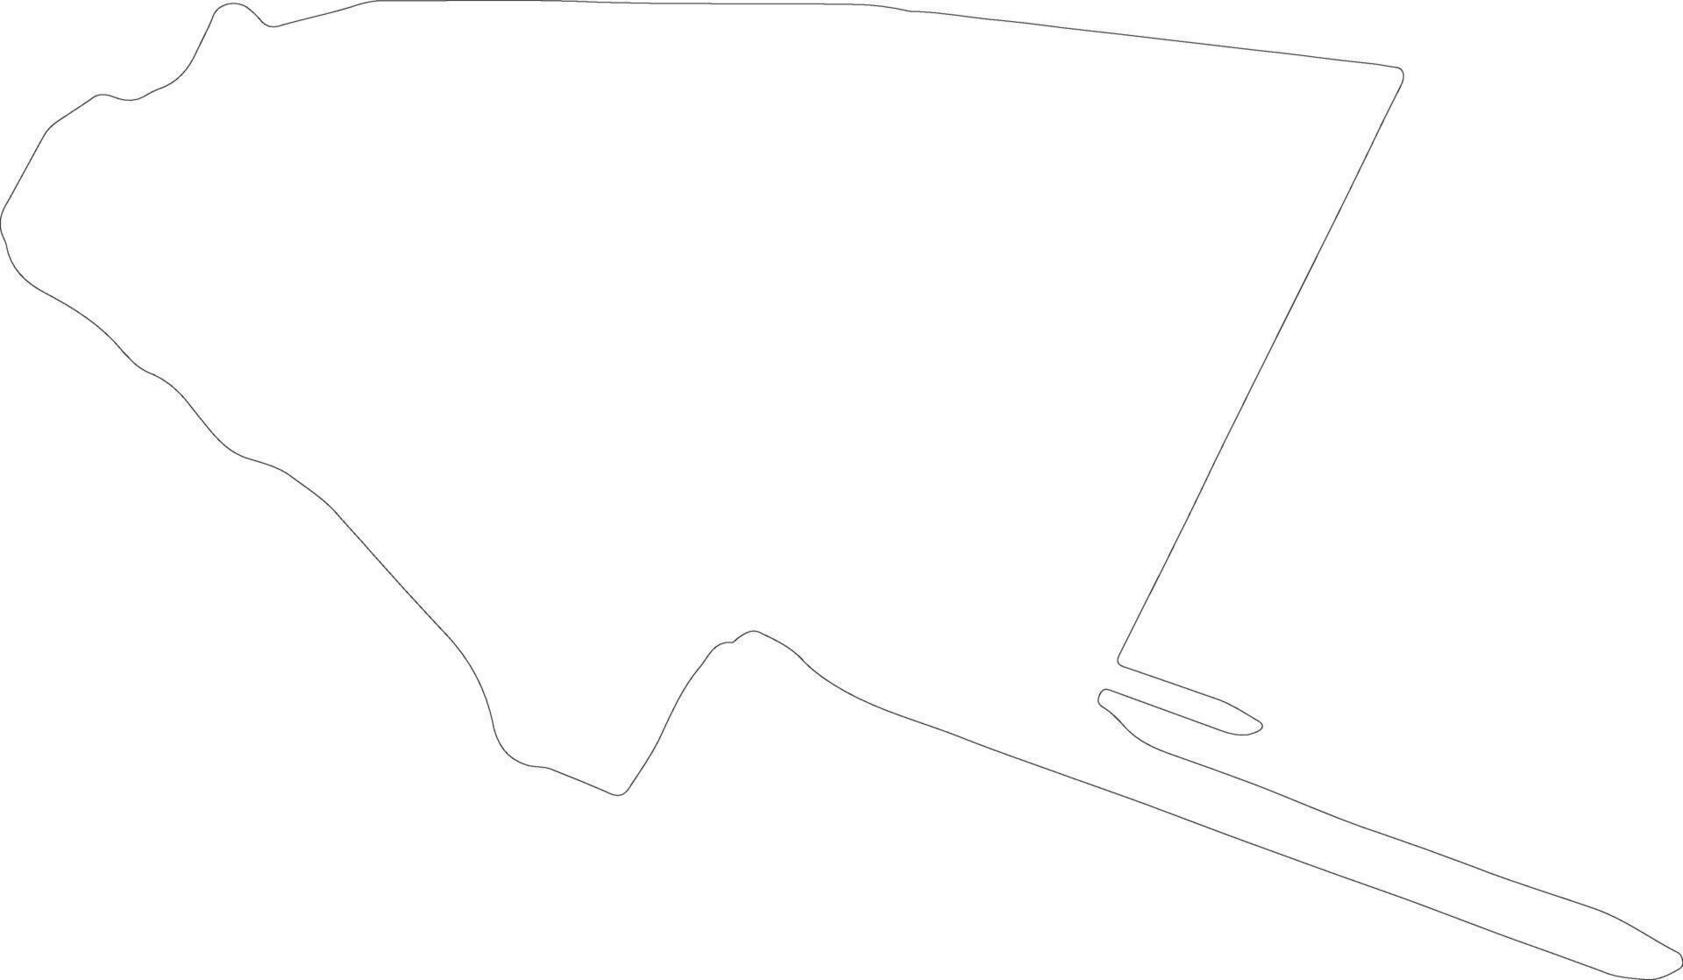 rivas nicaragua översikt Karta vektor